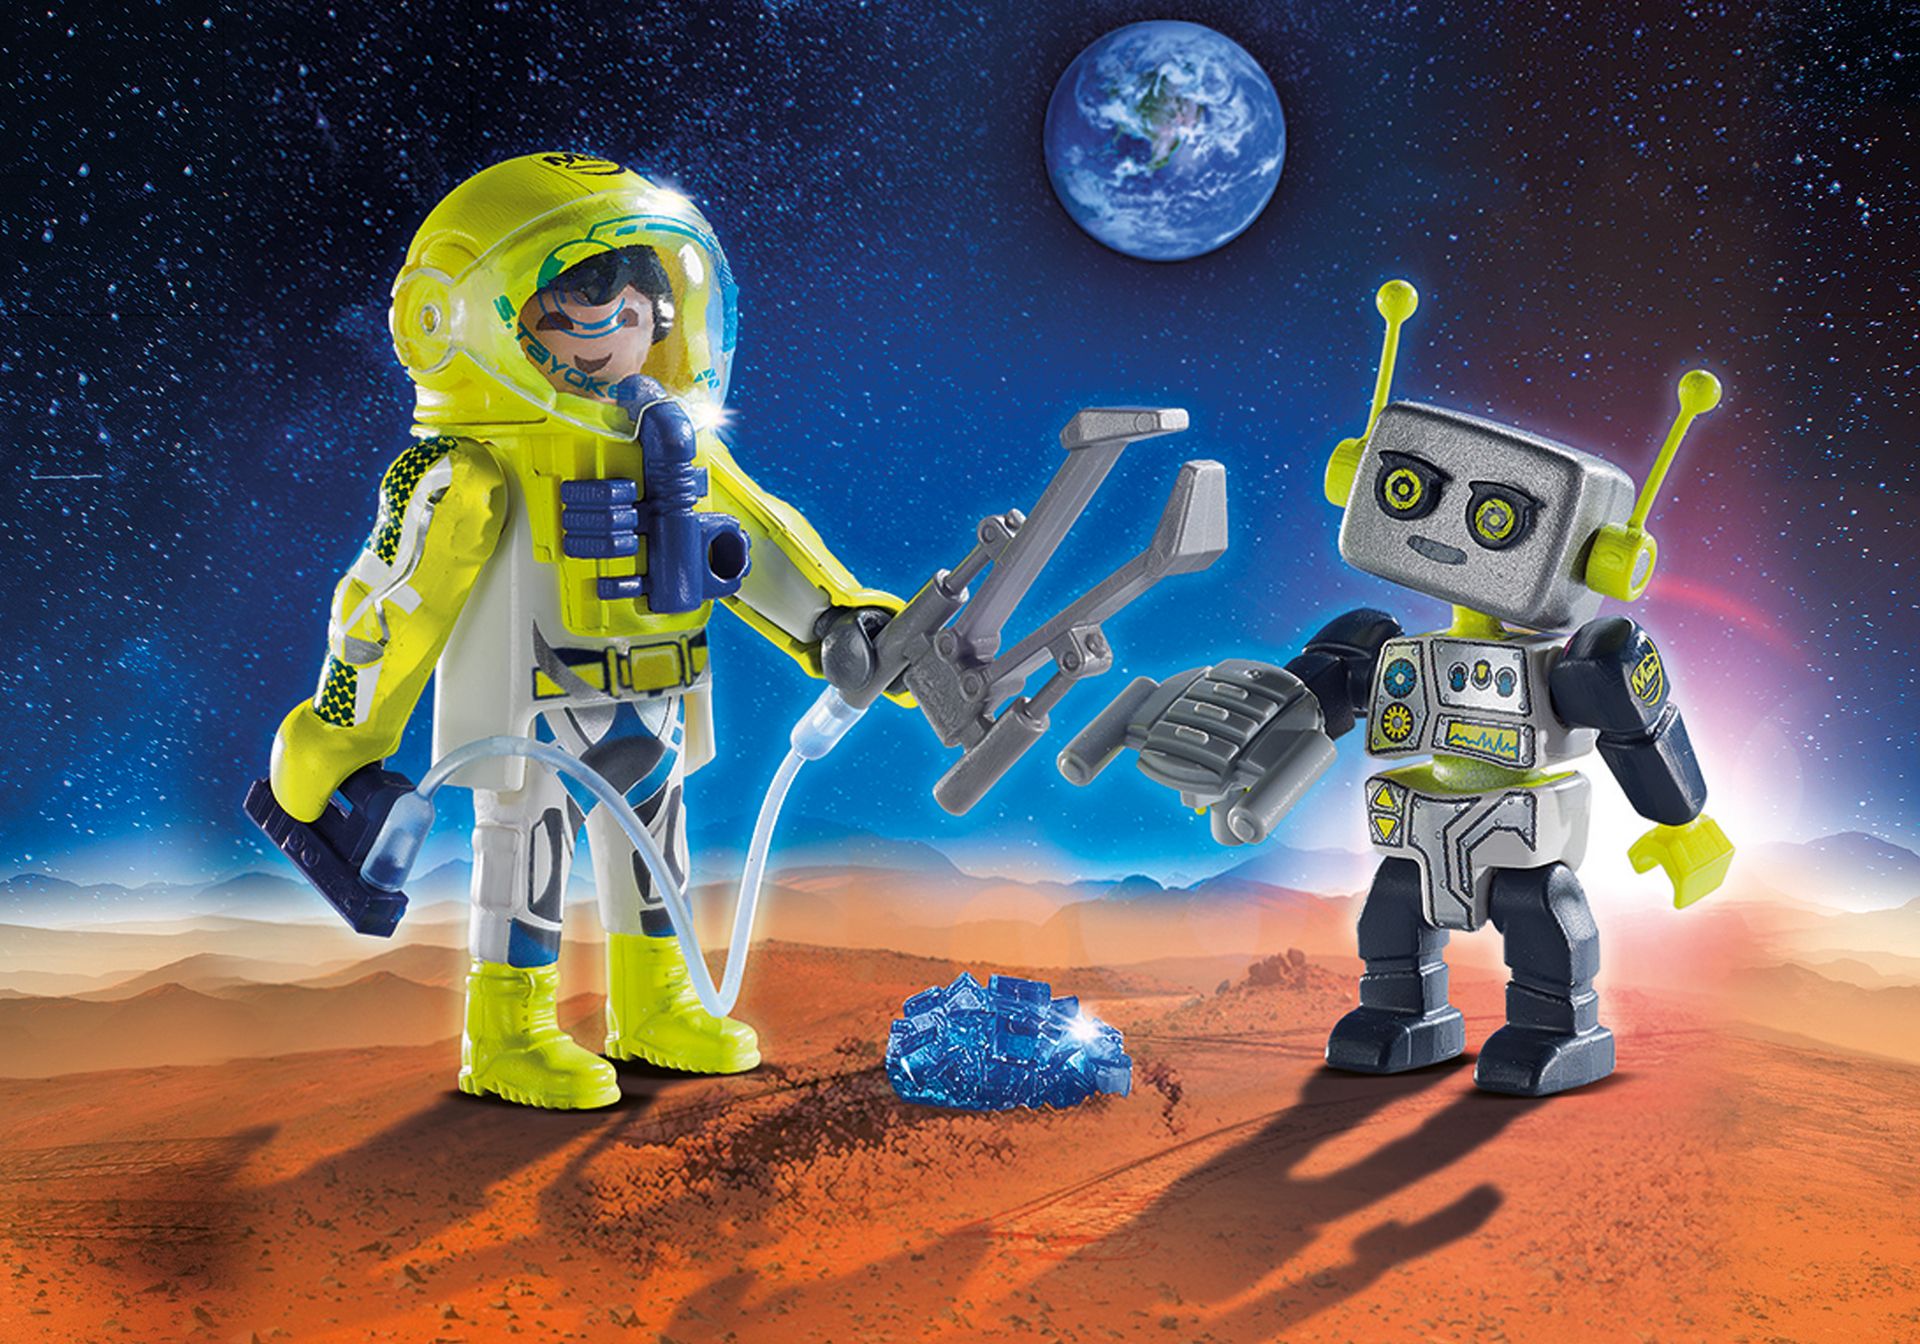 PLAYMOBIL Space Astronaut & Robot 9492 Ez1044 for sale online 